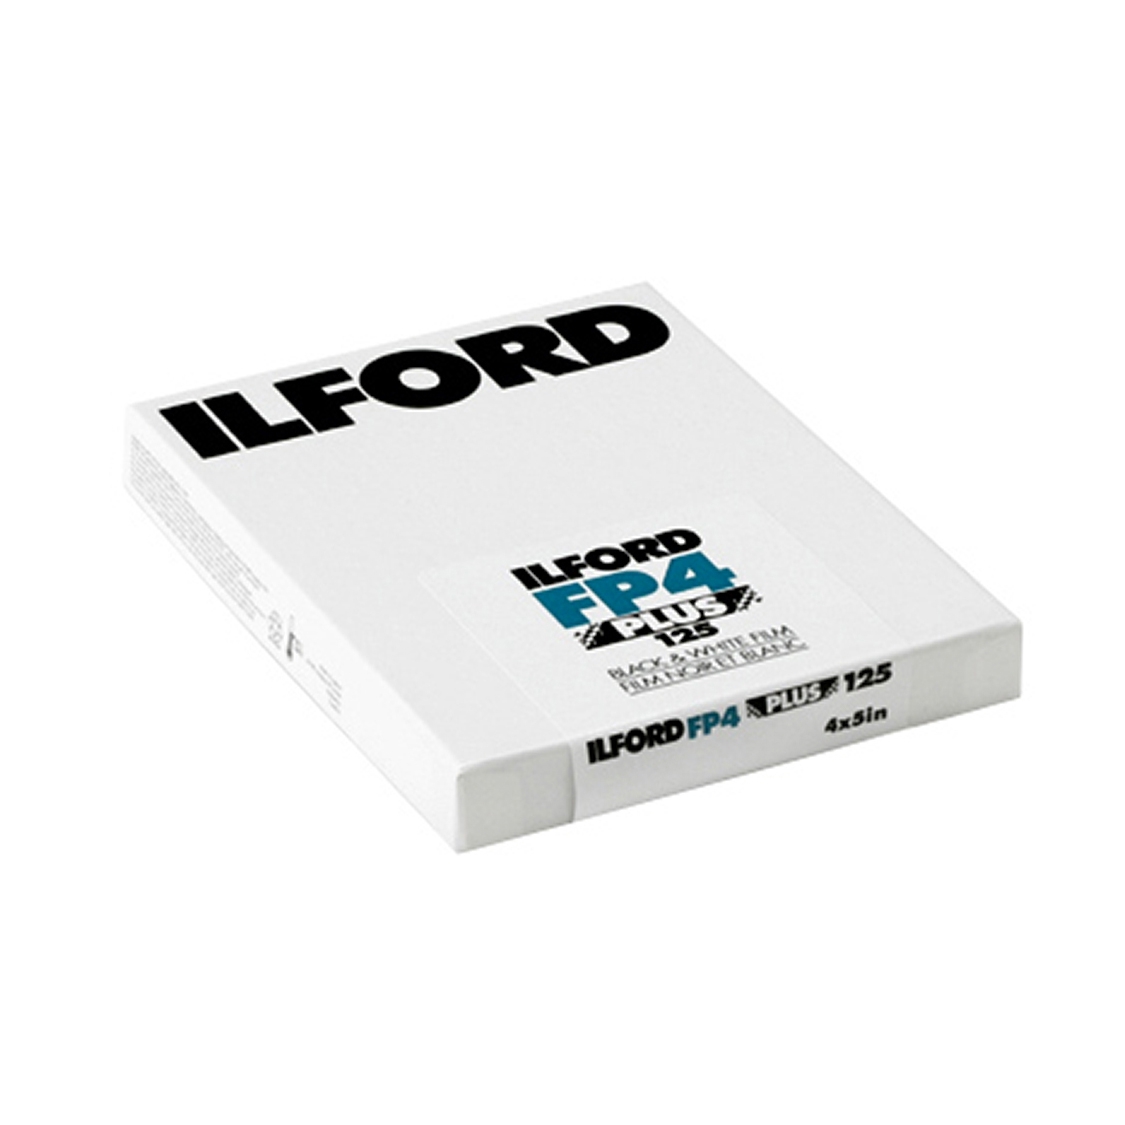 Ilford FP4 Plus 4x5 Film (100 sheets)